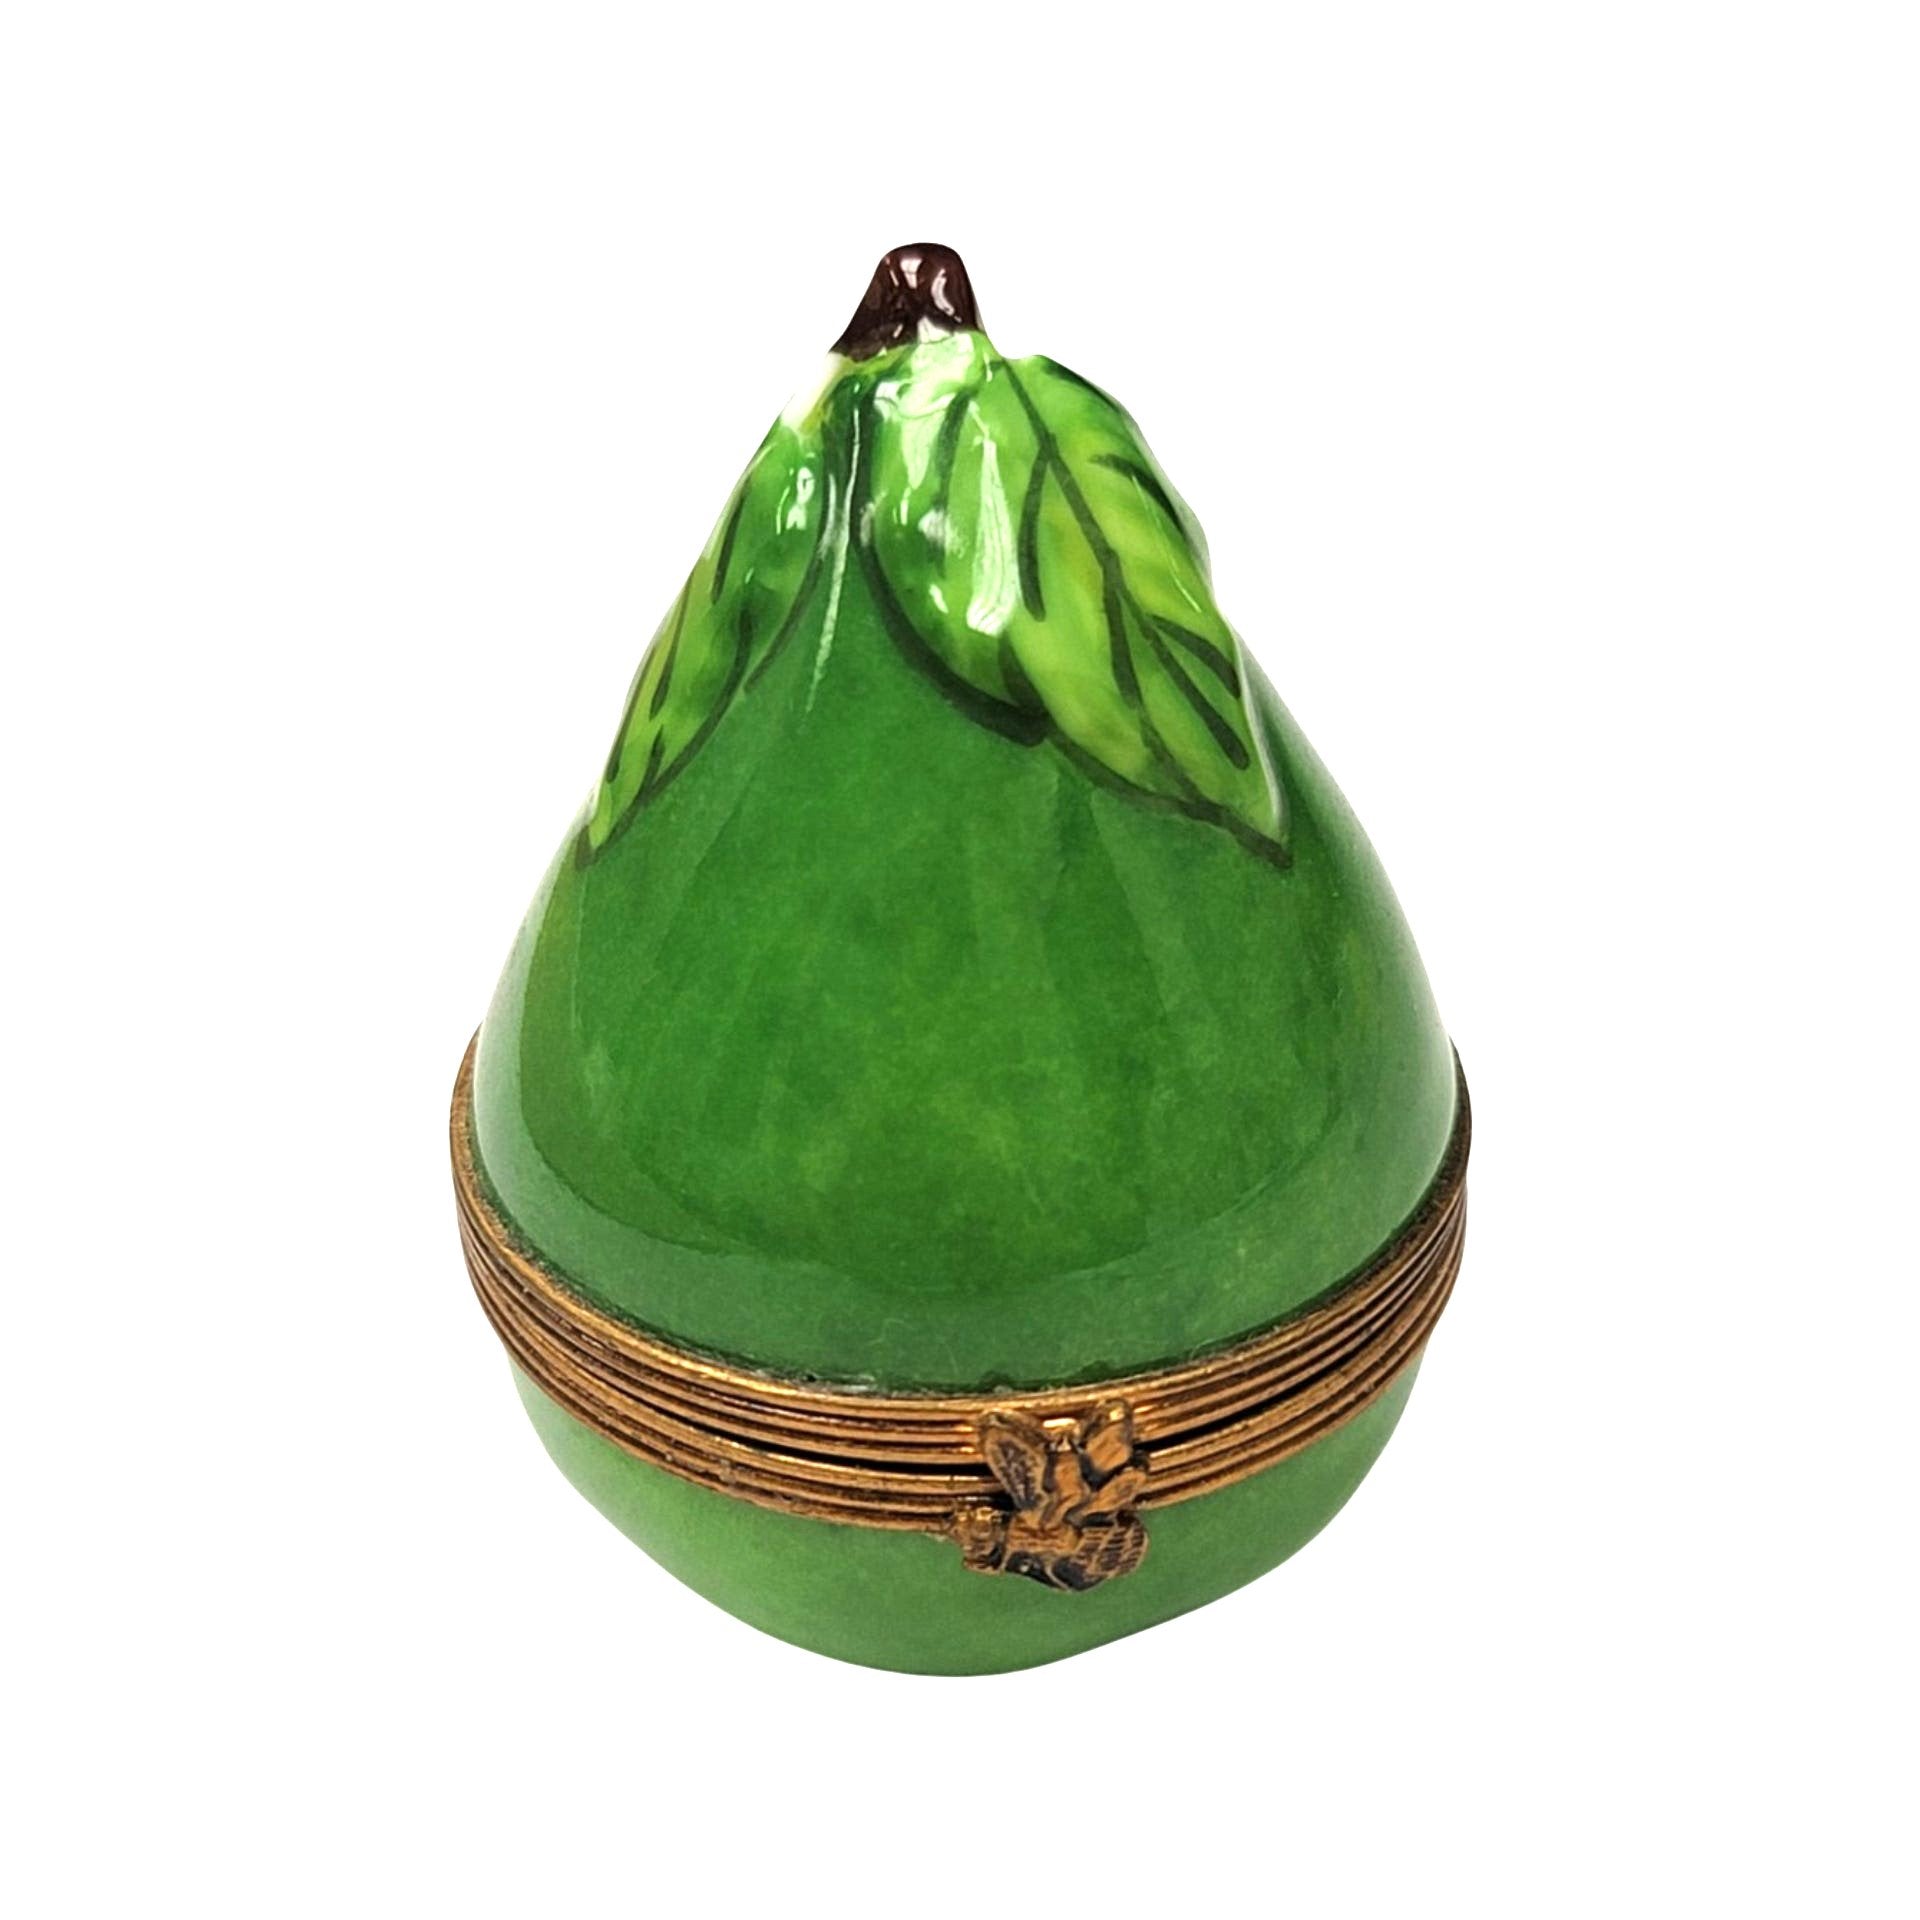 Pear Porcelain Limoges Trinket Box